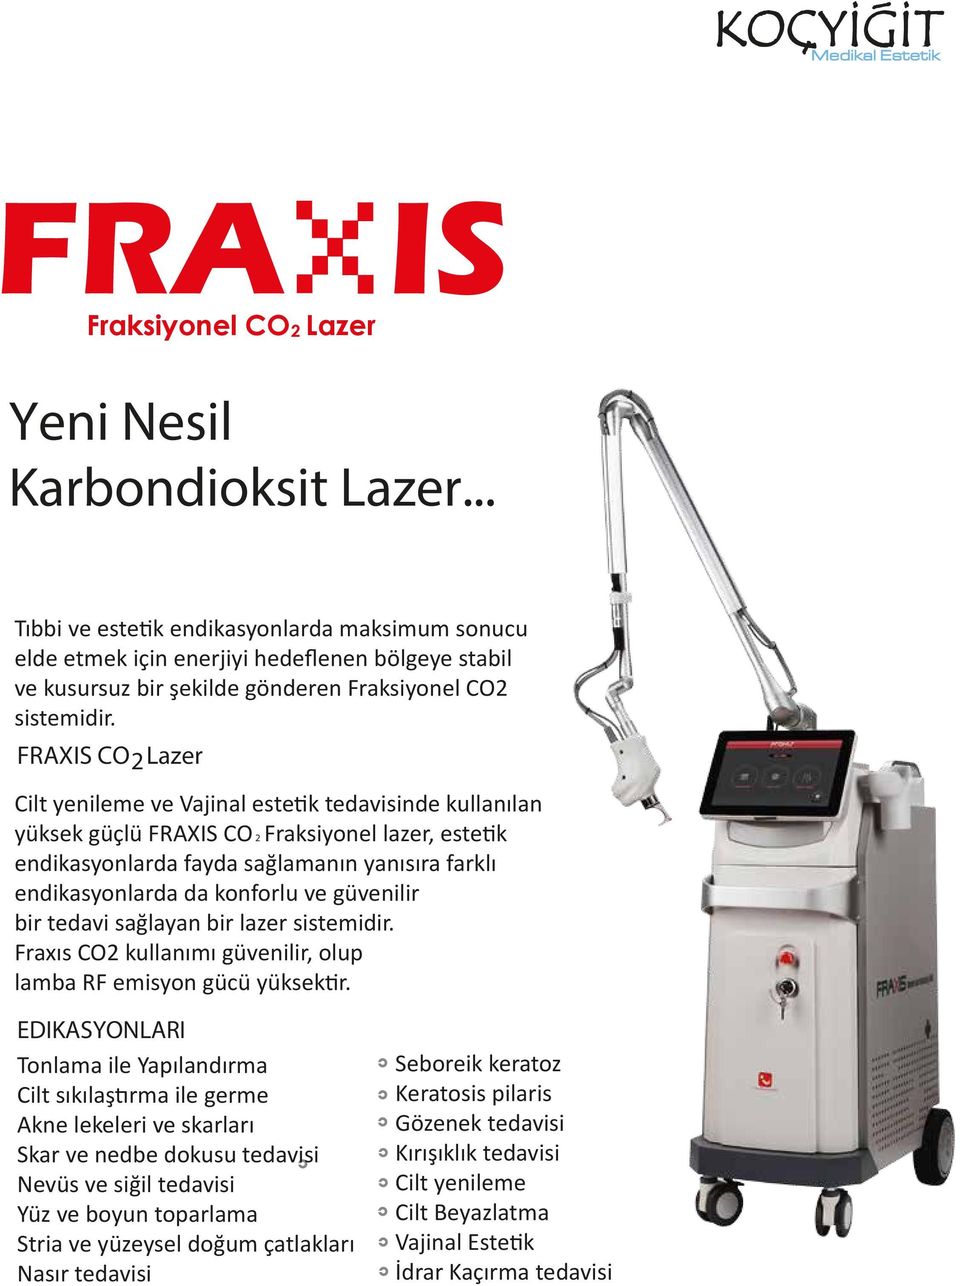 FRAXIS CO 2Lazer Cilt yenileme ve Vajinal estetik tedavisinde kullanılan yüksek güçlü FRAXIS CO 2 Fraksiyonel lazer, estetik endikasyonlarda fayda sağlamanın yanısıra farklı endikasyonlarda da